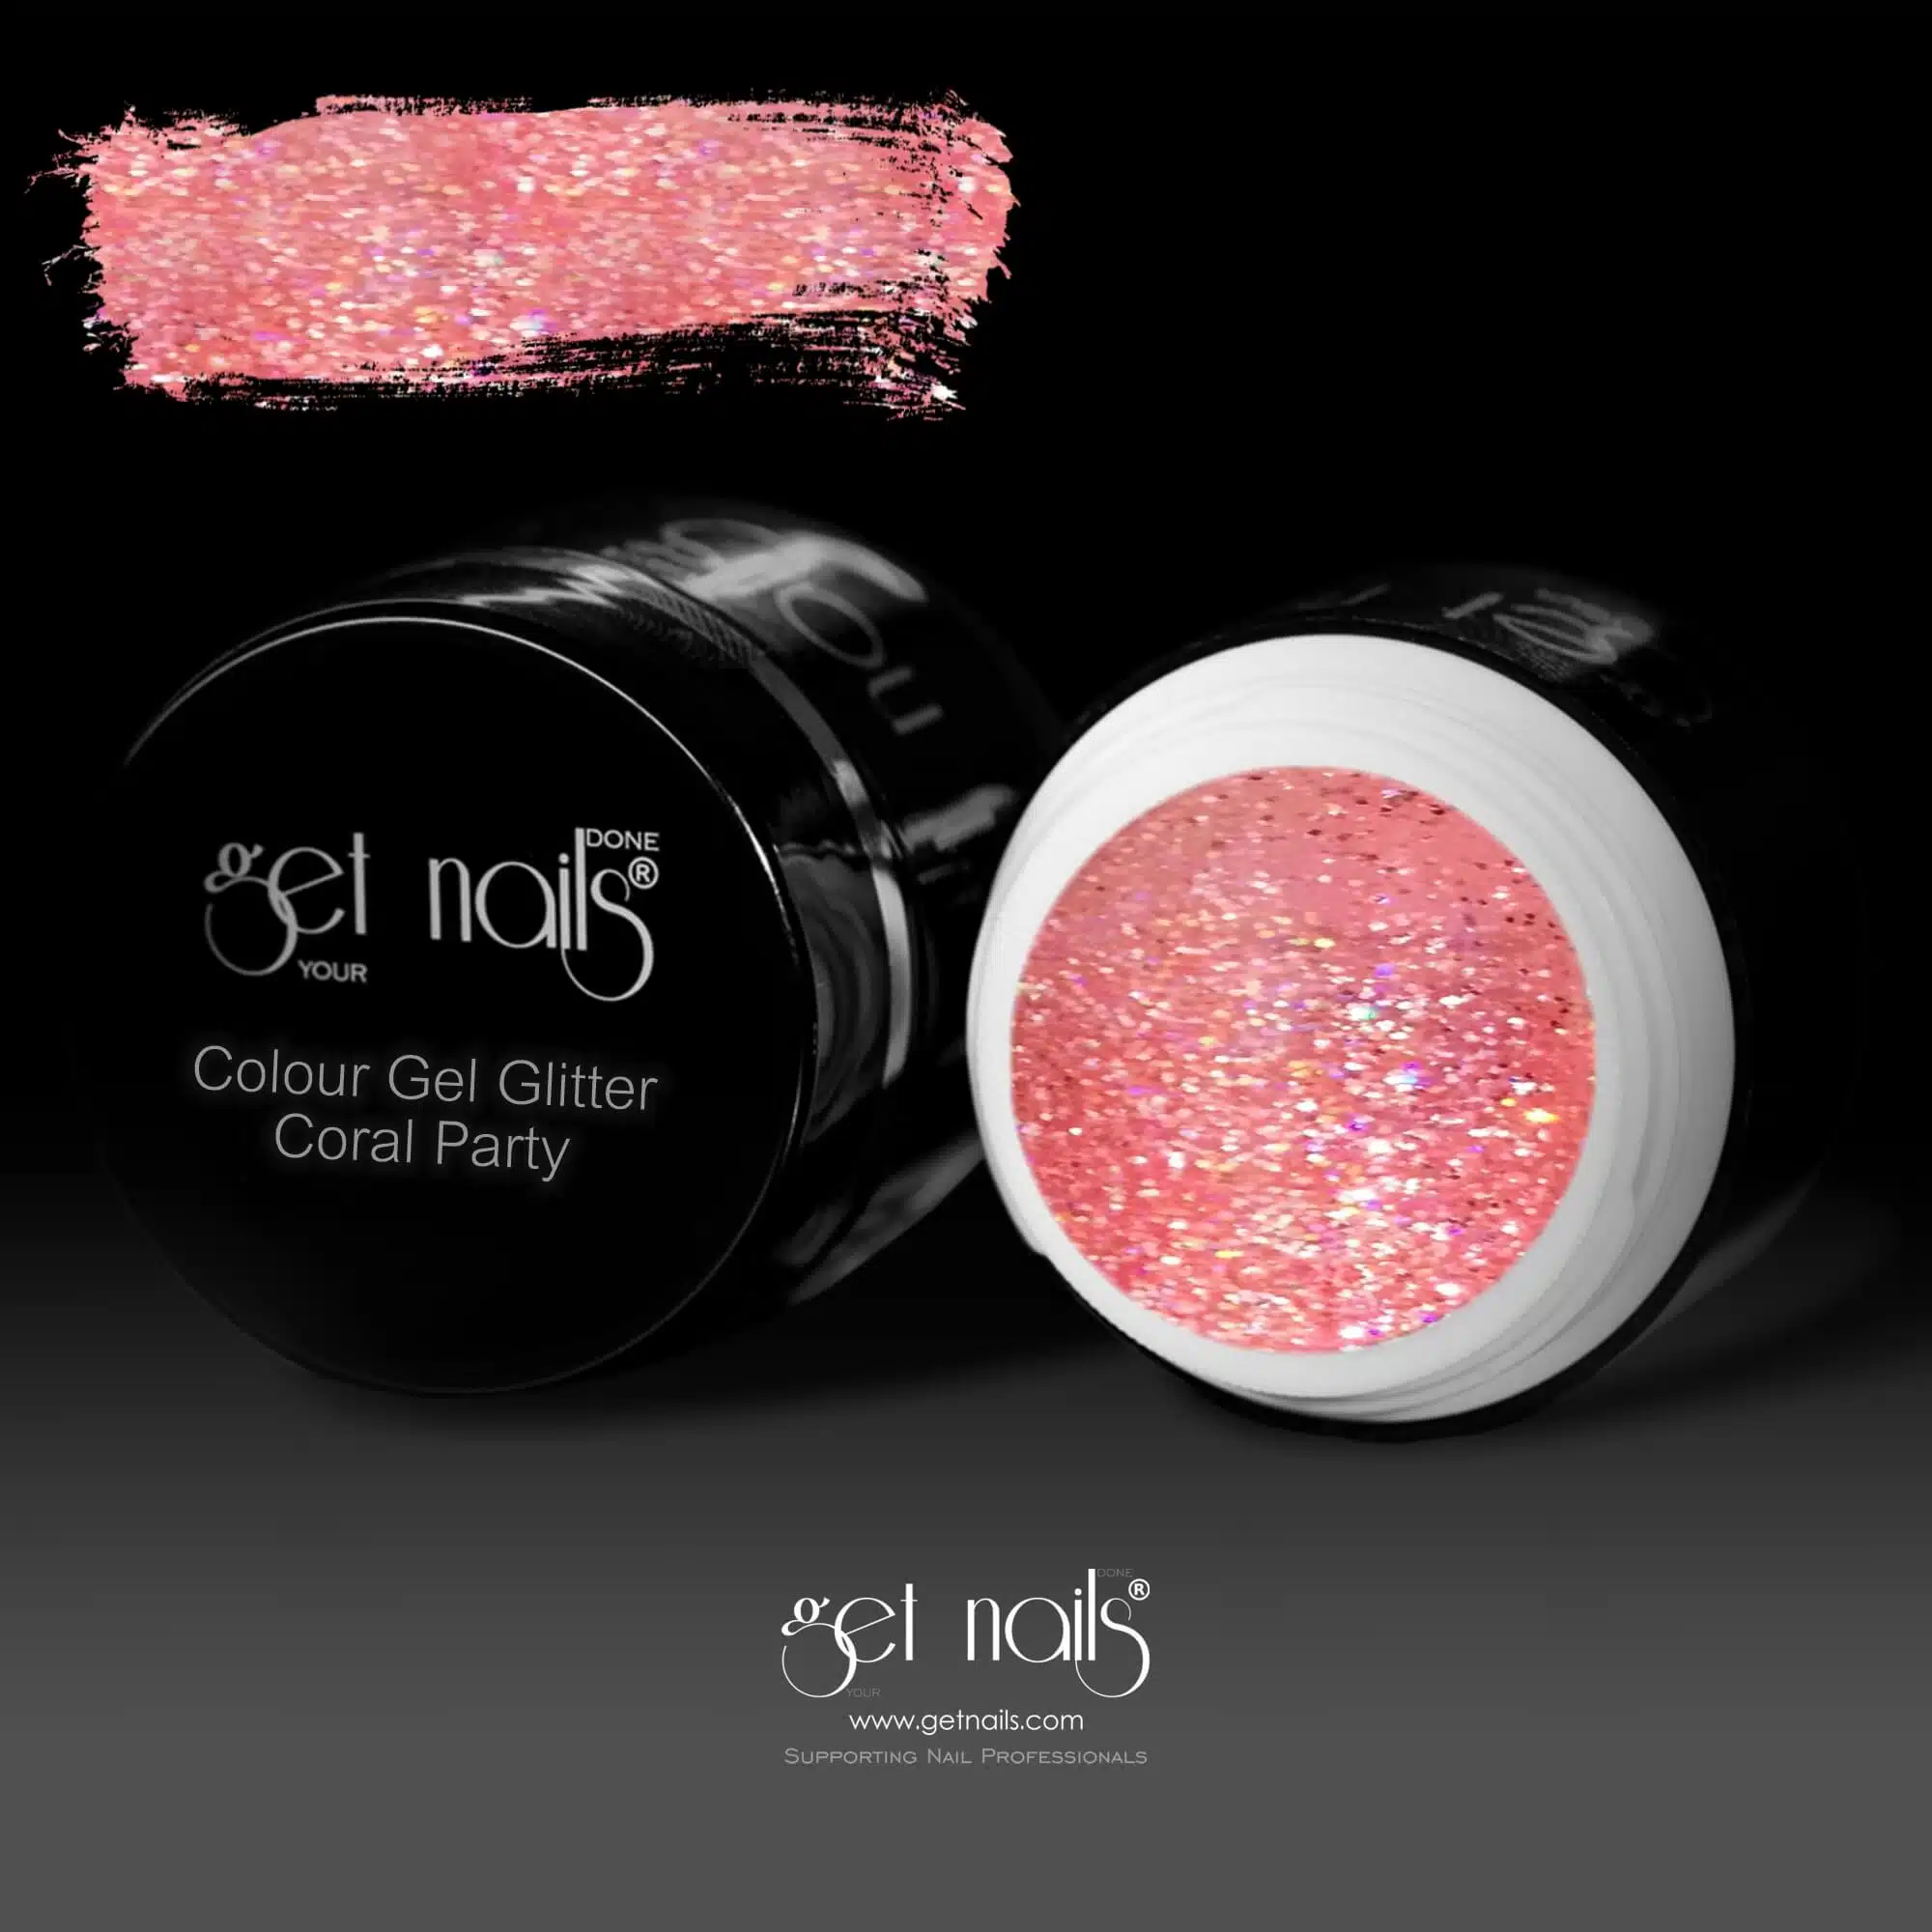 Get Nails Austria - Colour Gel Glitter Coral Party 5g